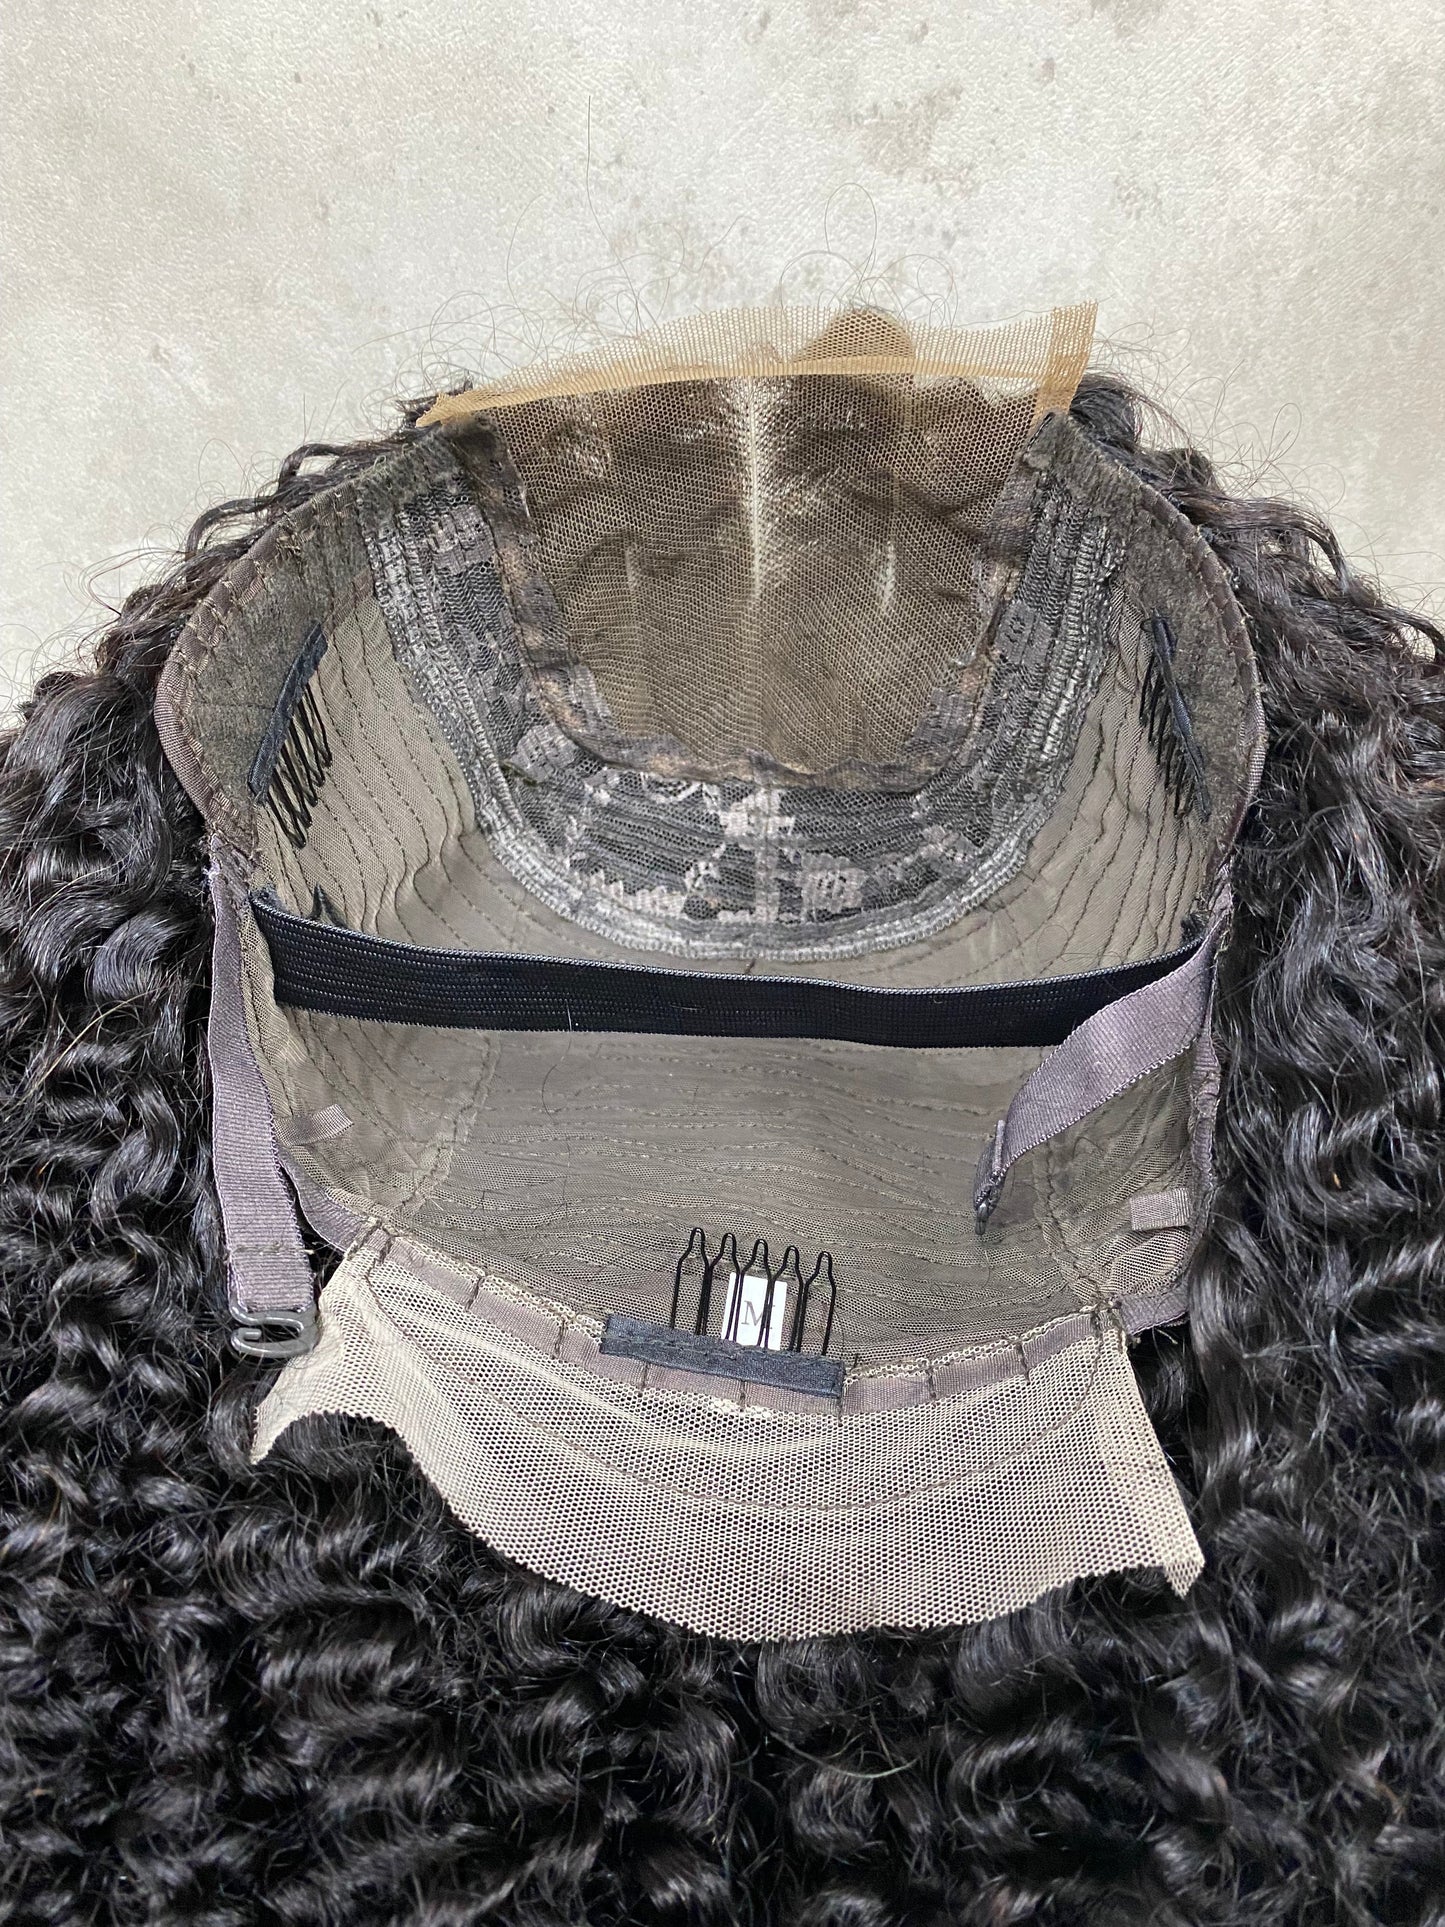 Perruques Afro Bouclées de Cheveux Humains Remy Lace Nature 4x4